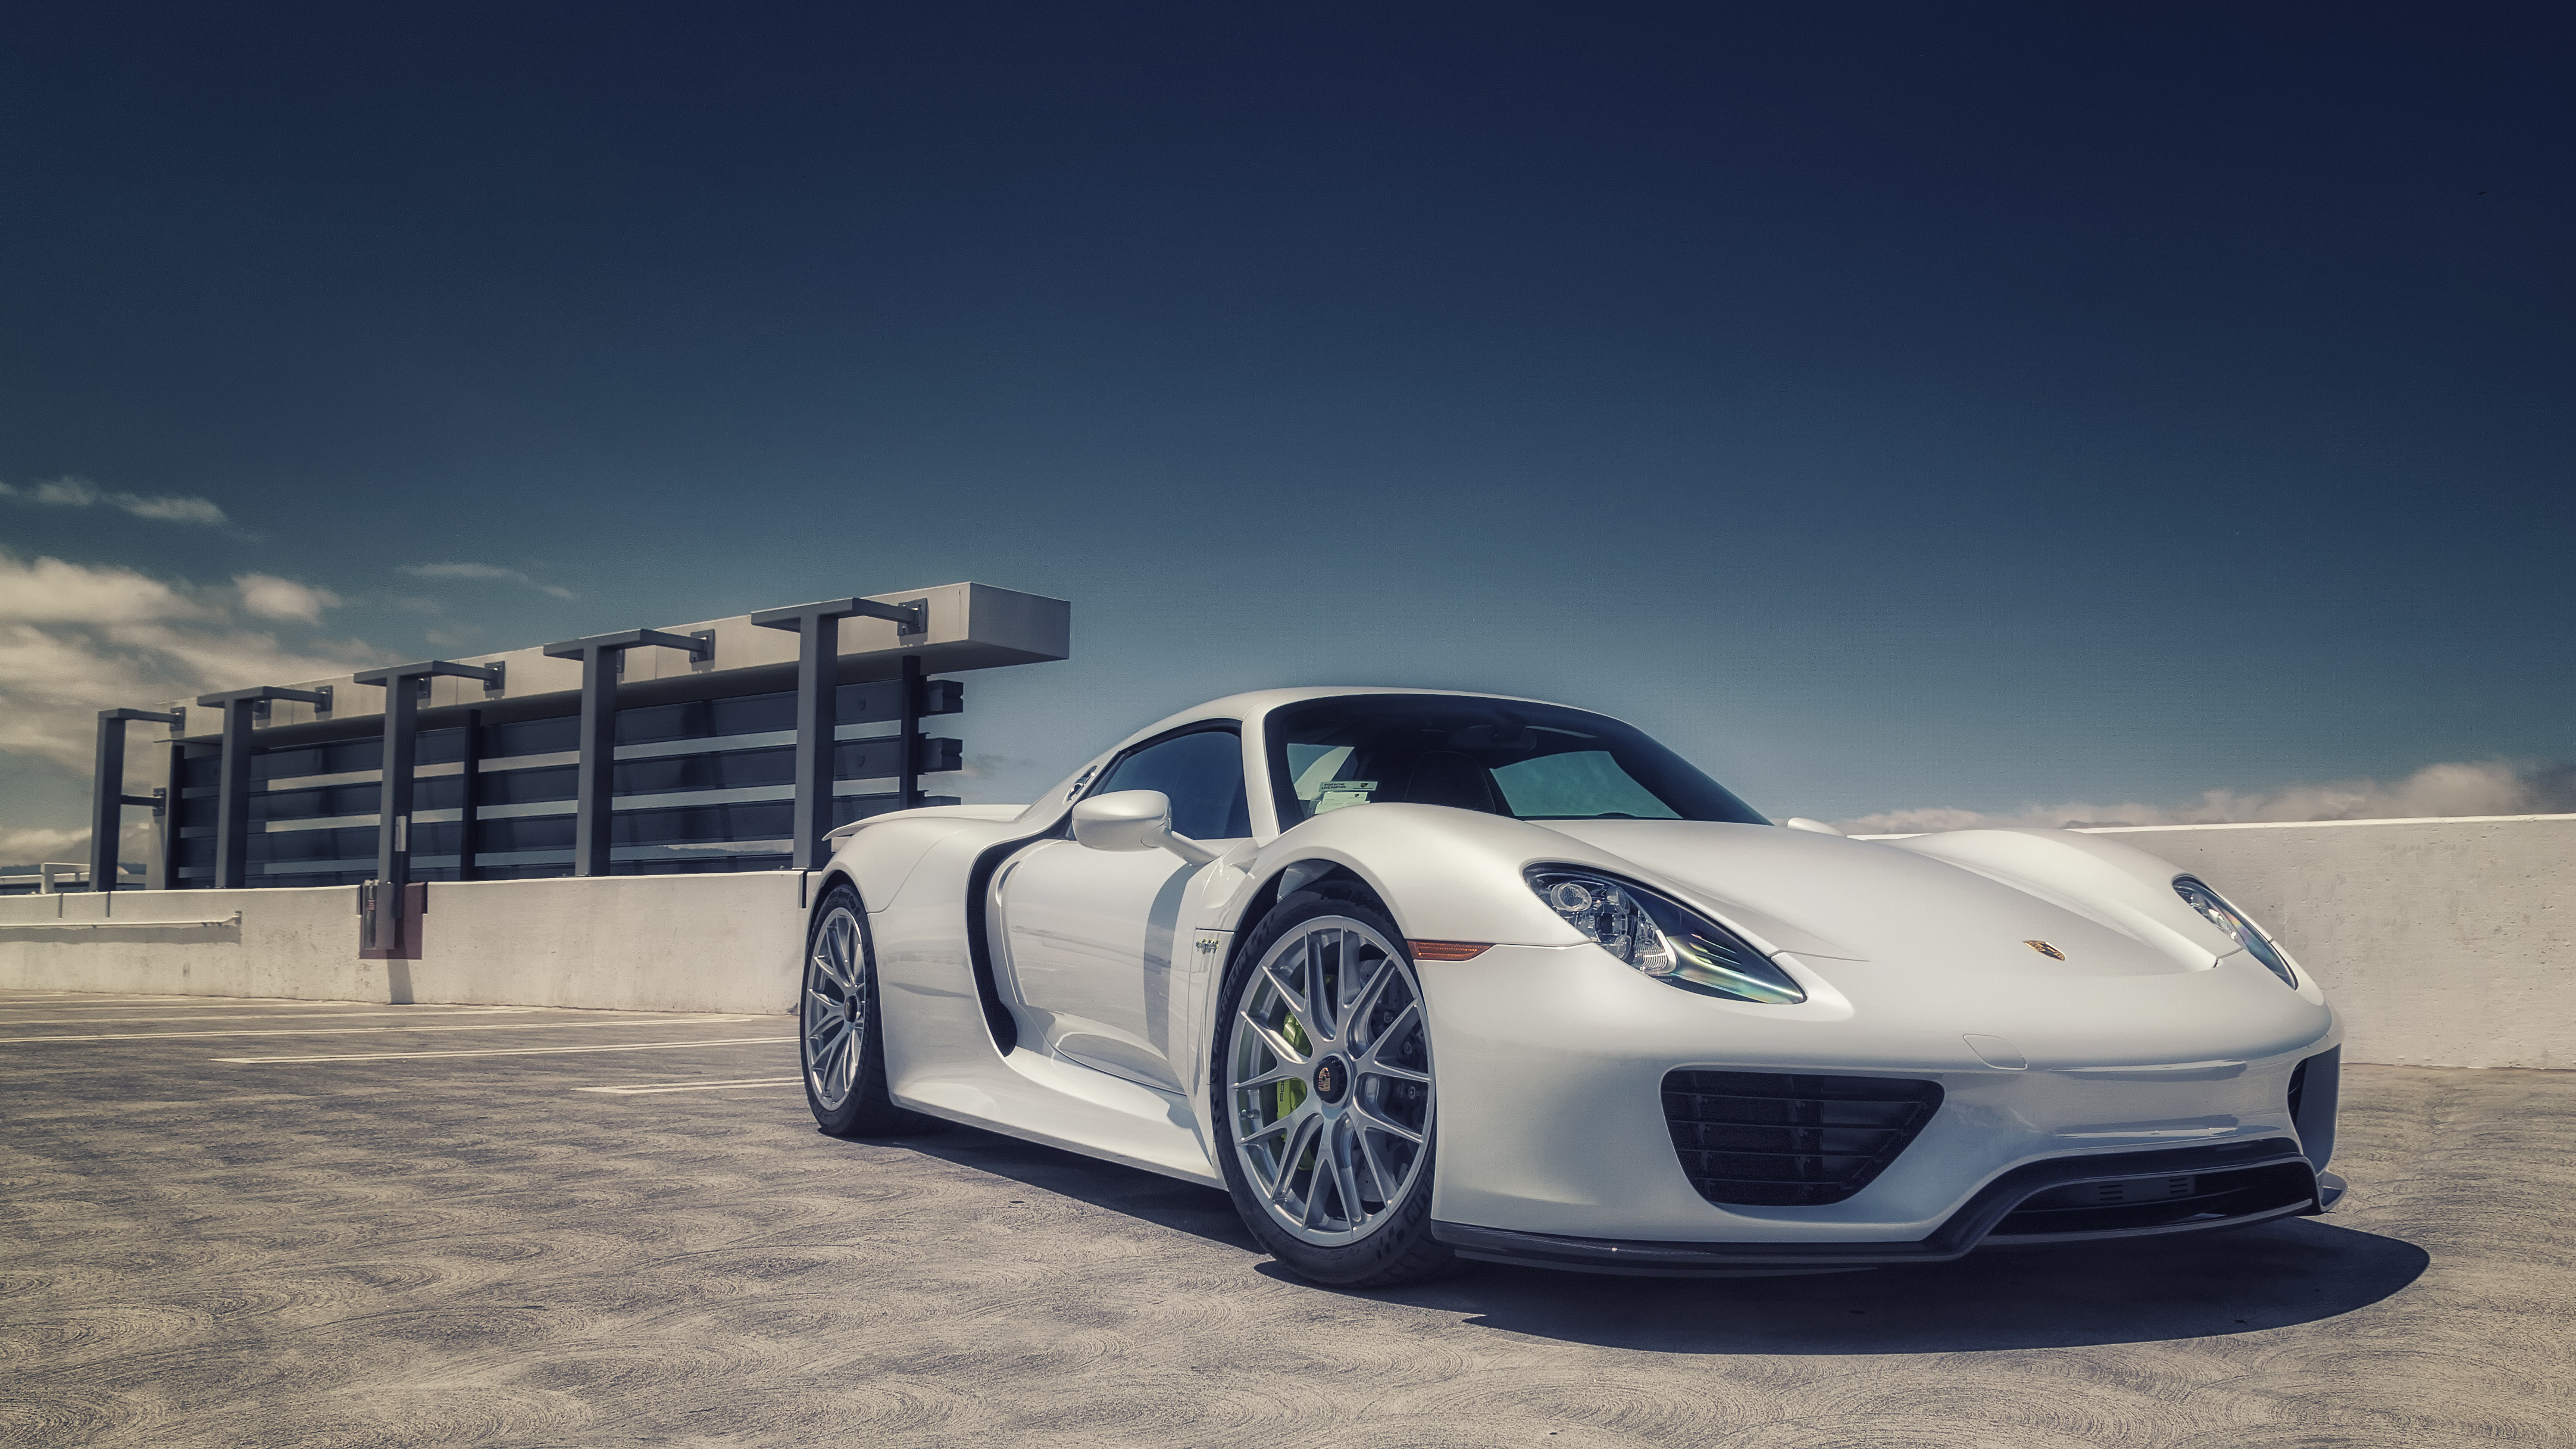 Porsche 918 Spyder, HD Cars, 4k Wallpapers, Images ...